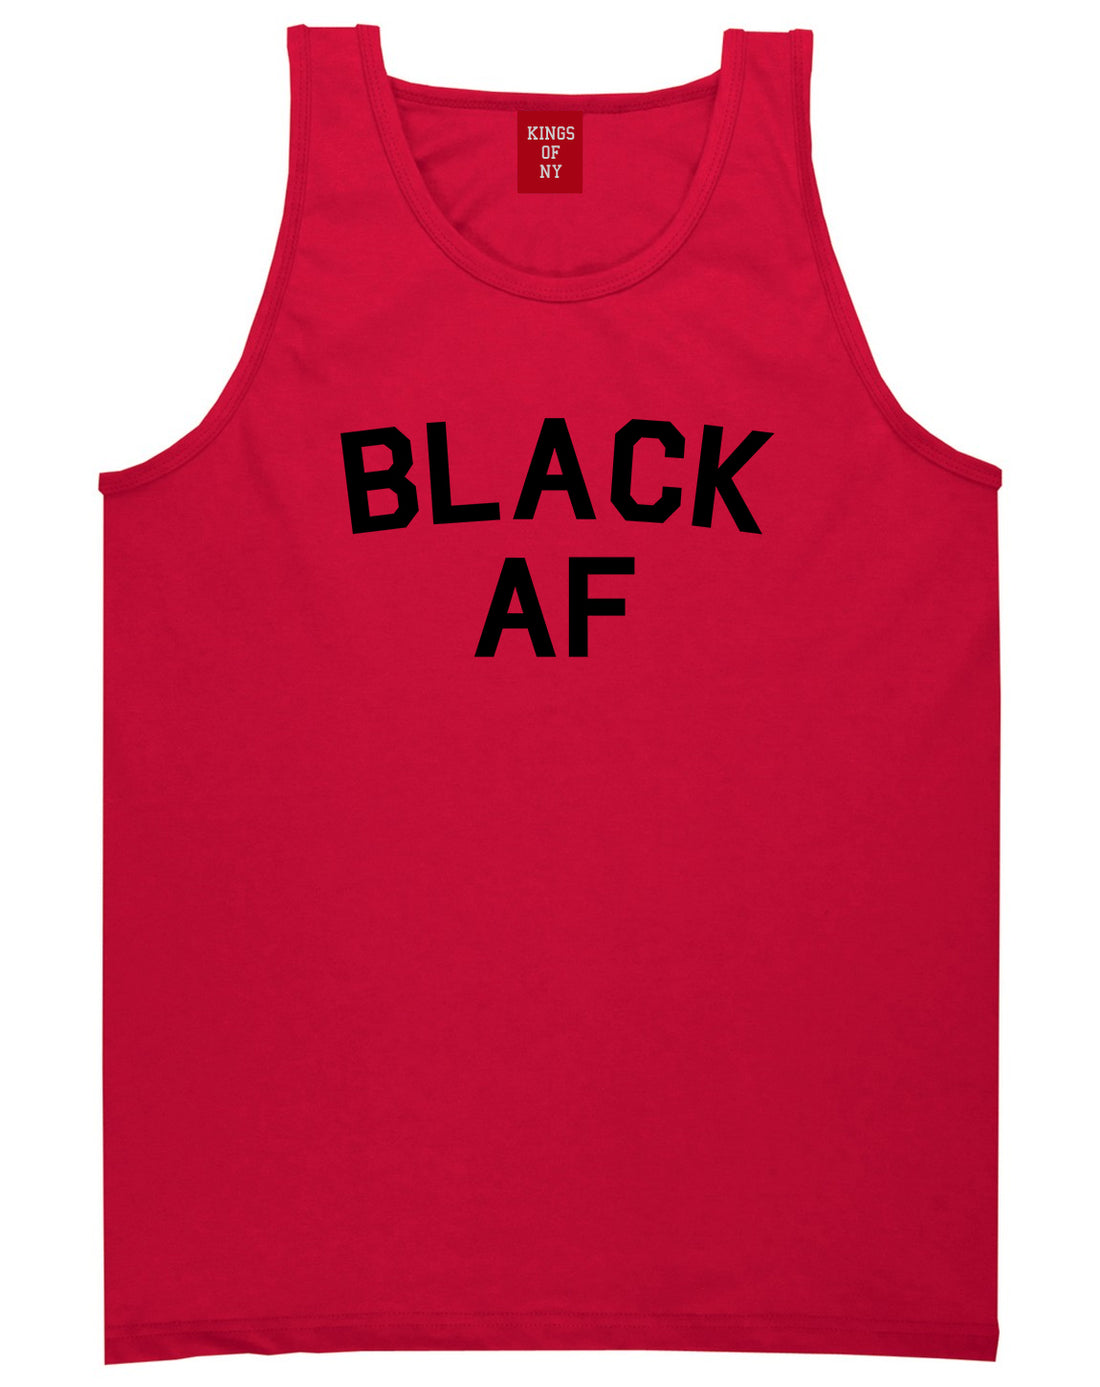 Black AF Mens Tank Top Shirt Red